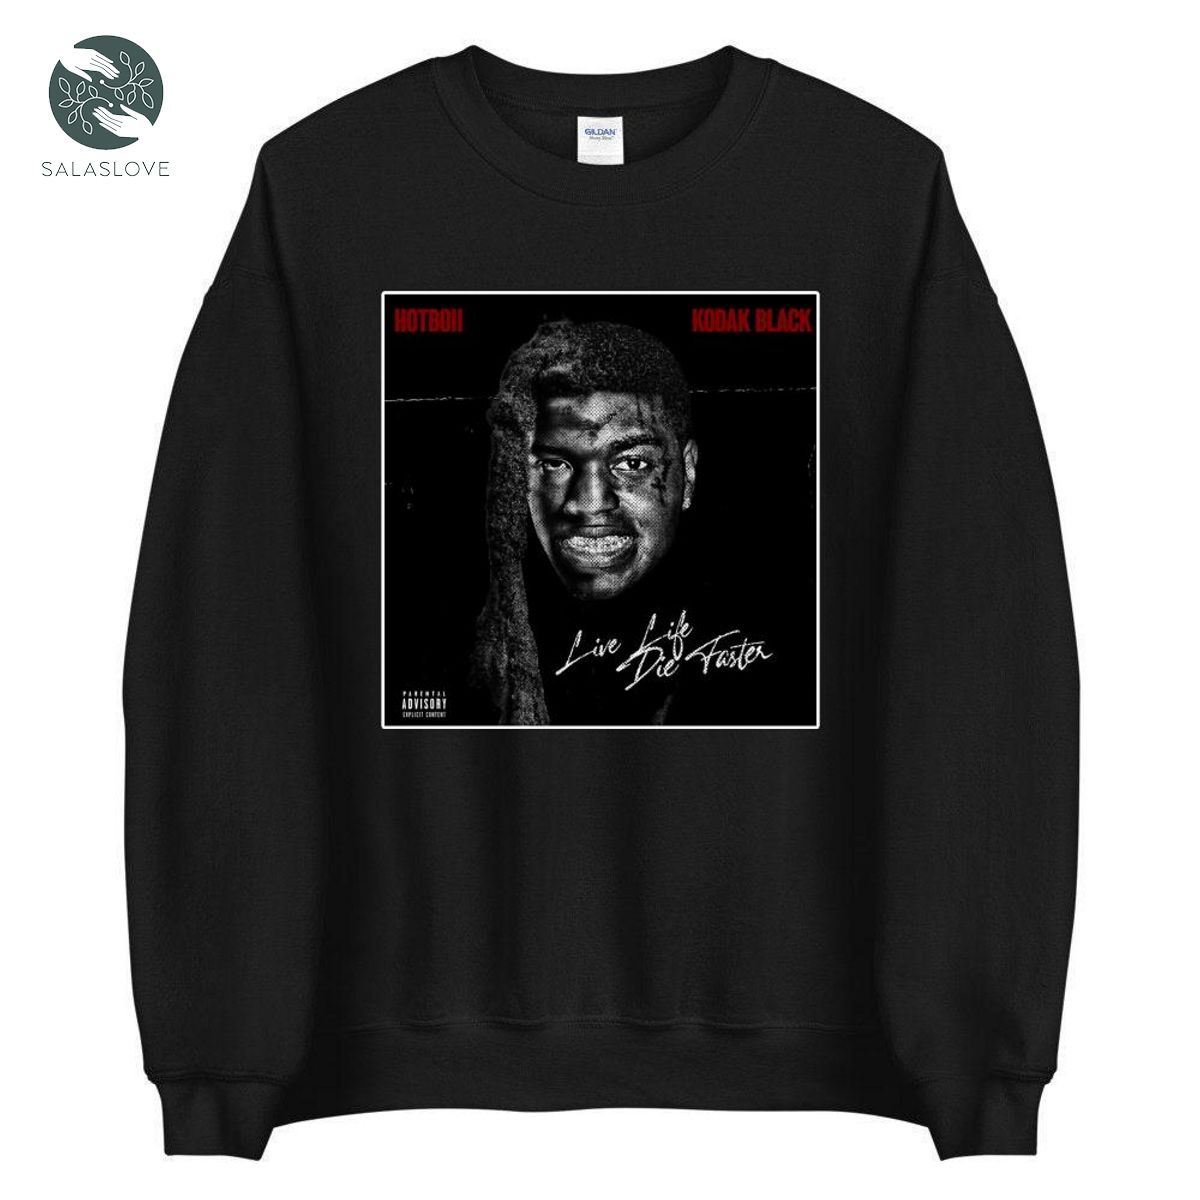 Kodak Black Unisex Shirt Music Gift For Fan